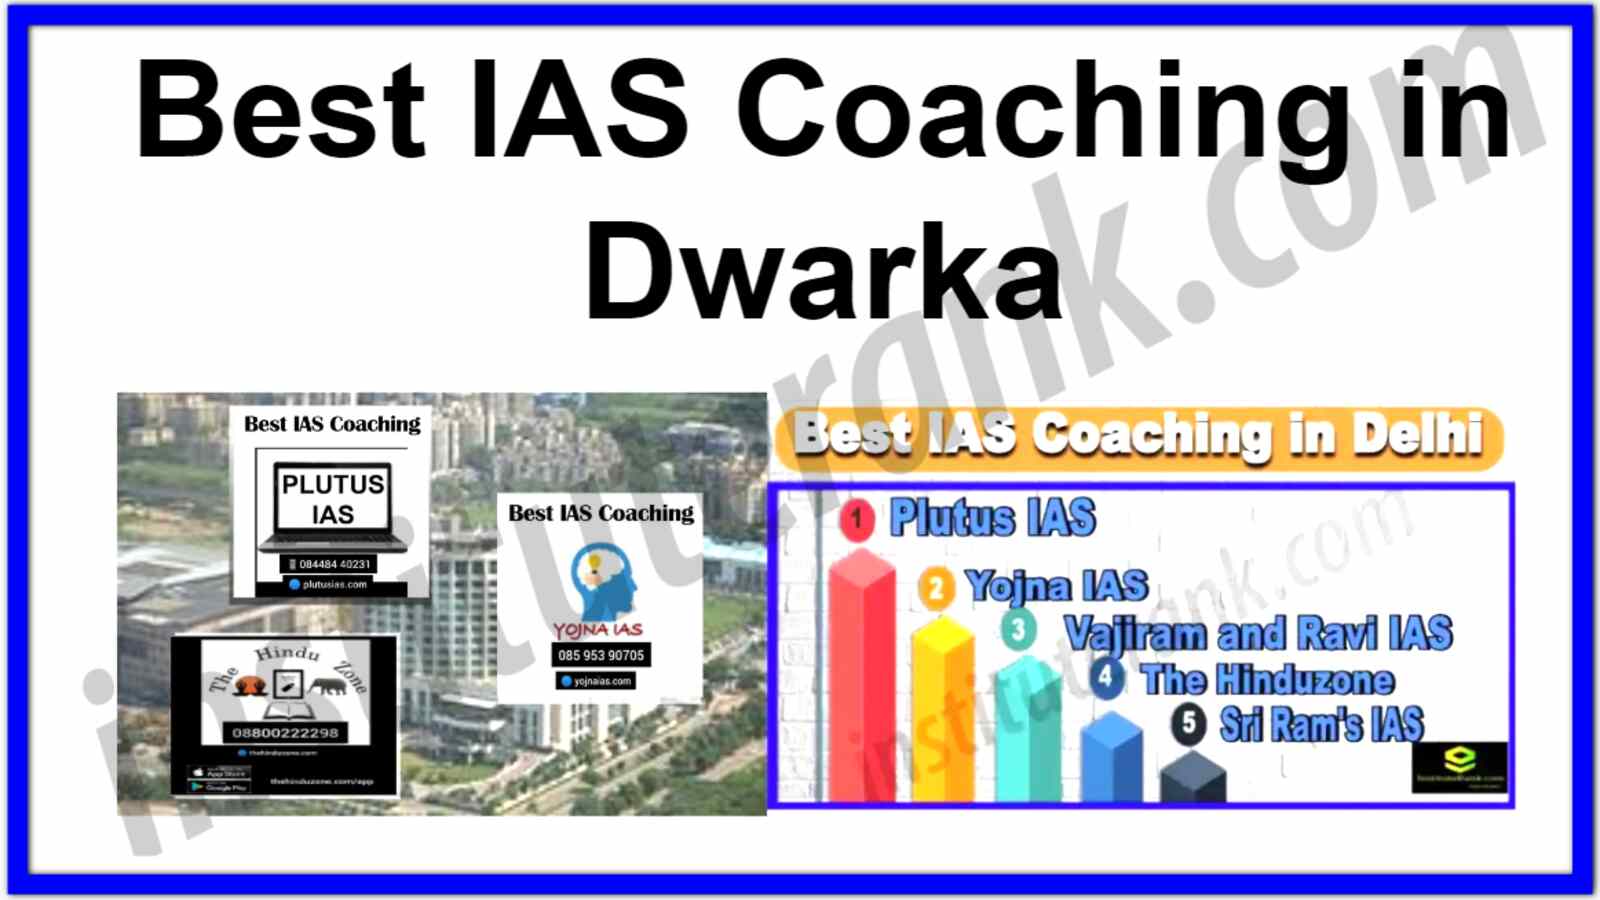 Best IAS Coaching in Dwarka